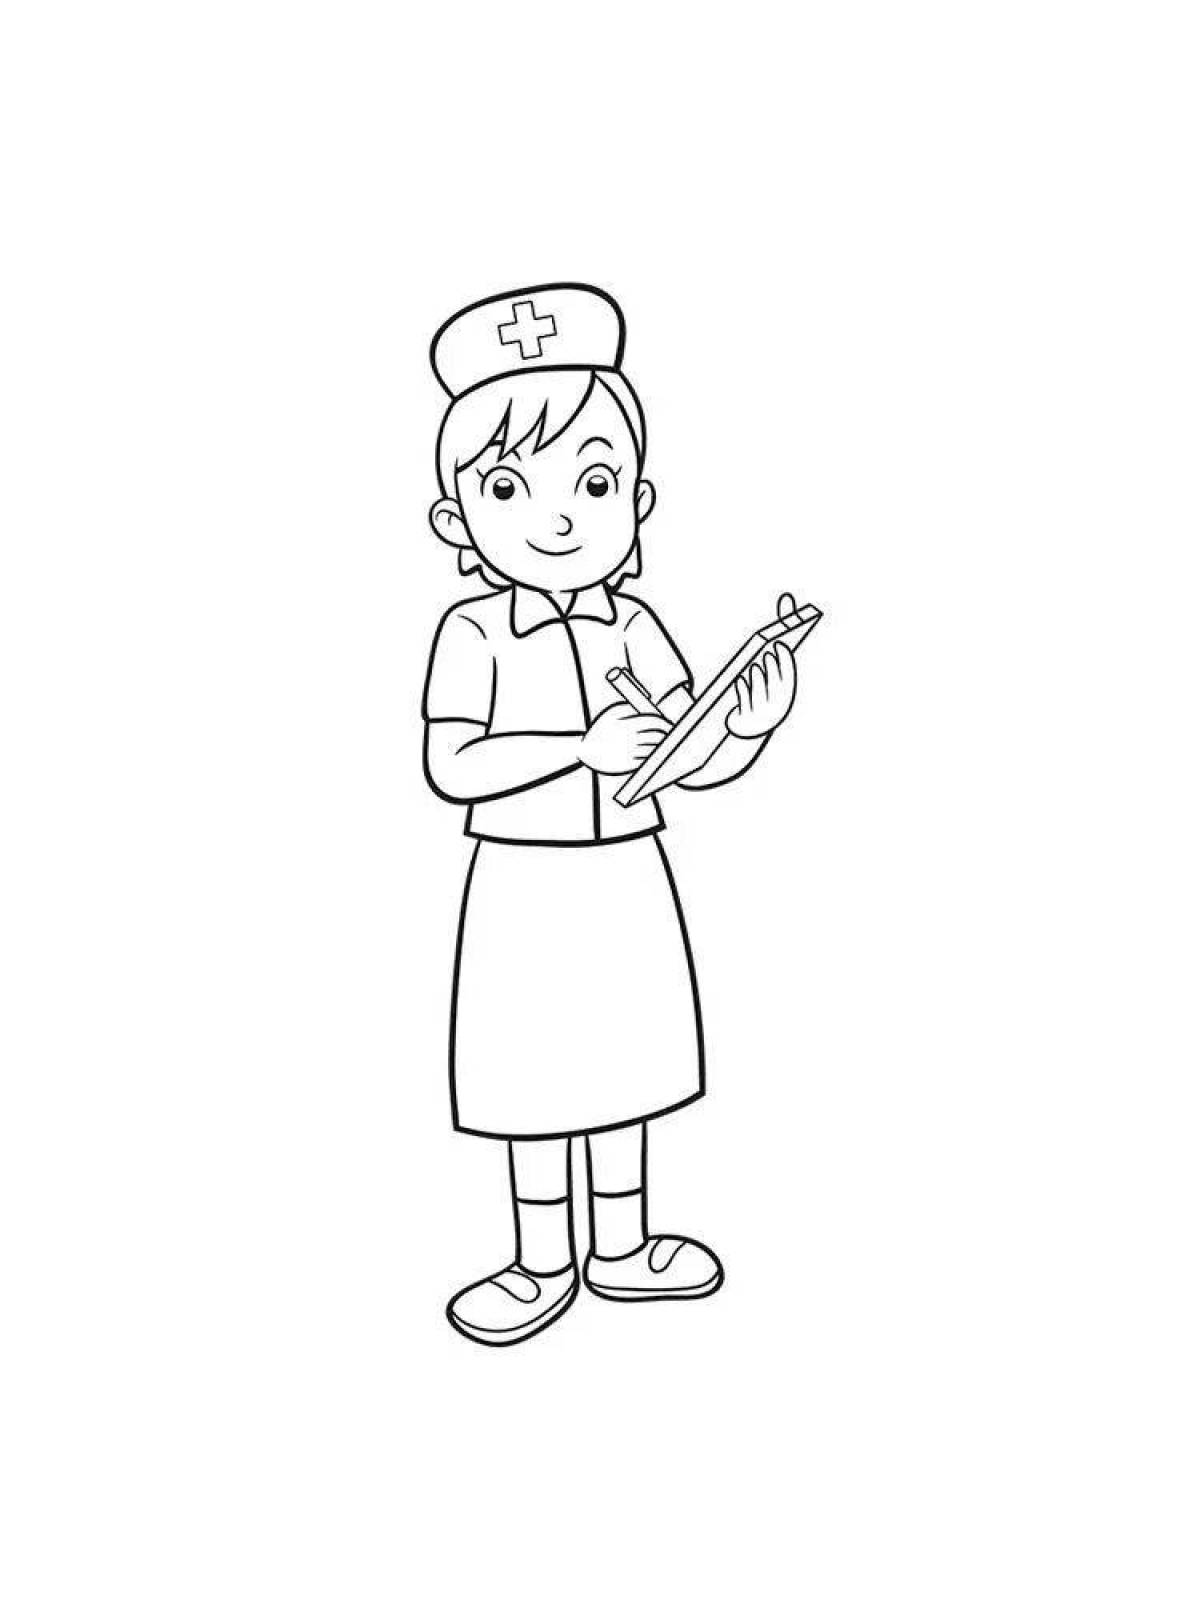 Prosperous nurse coloring page